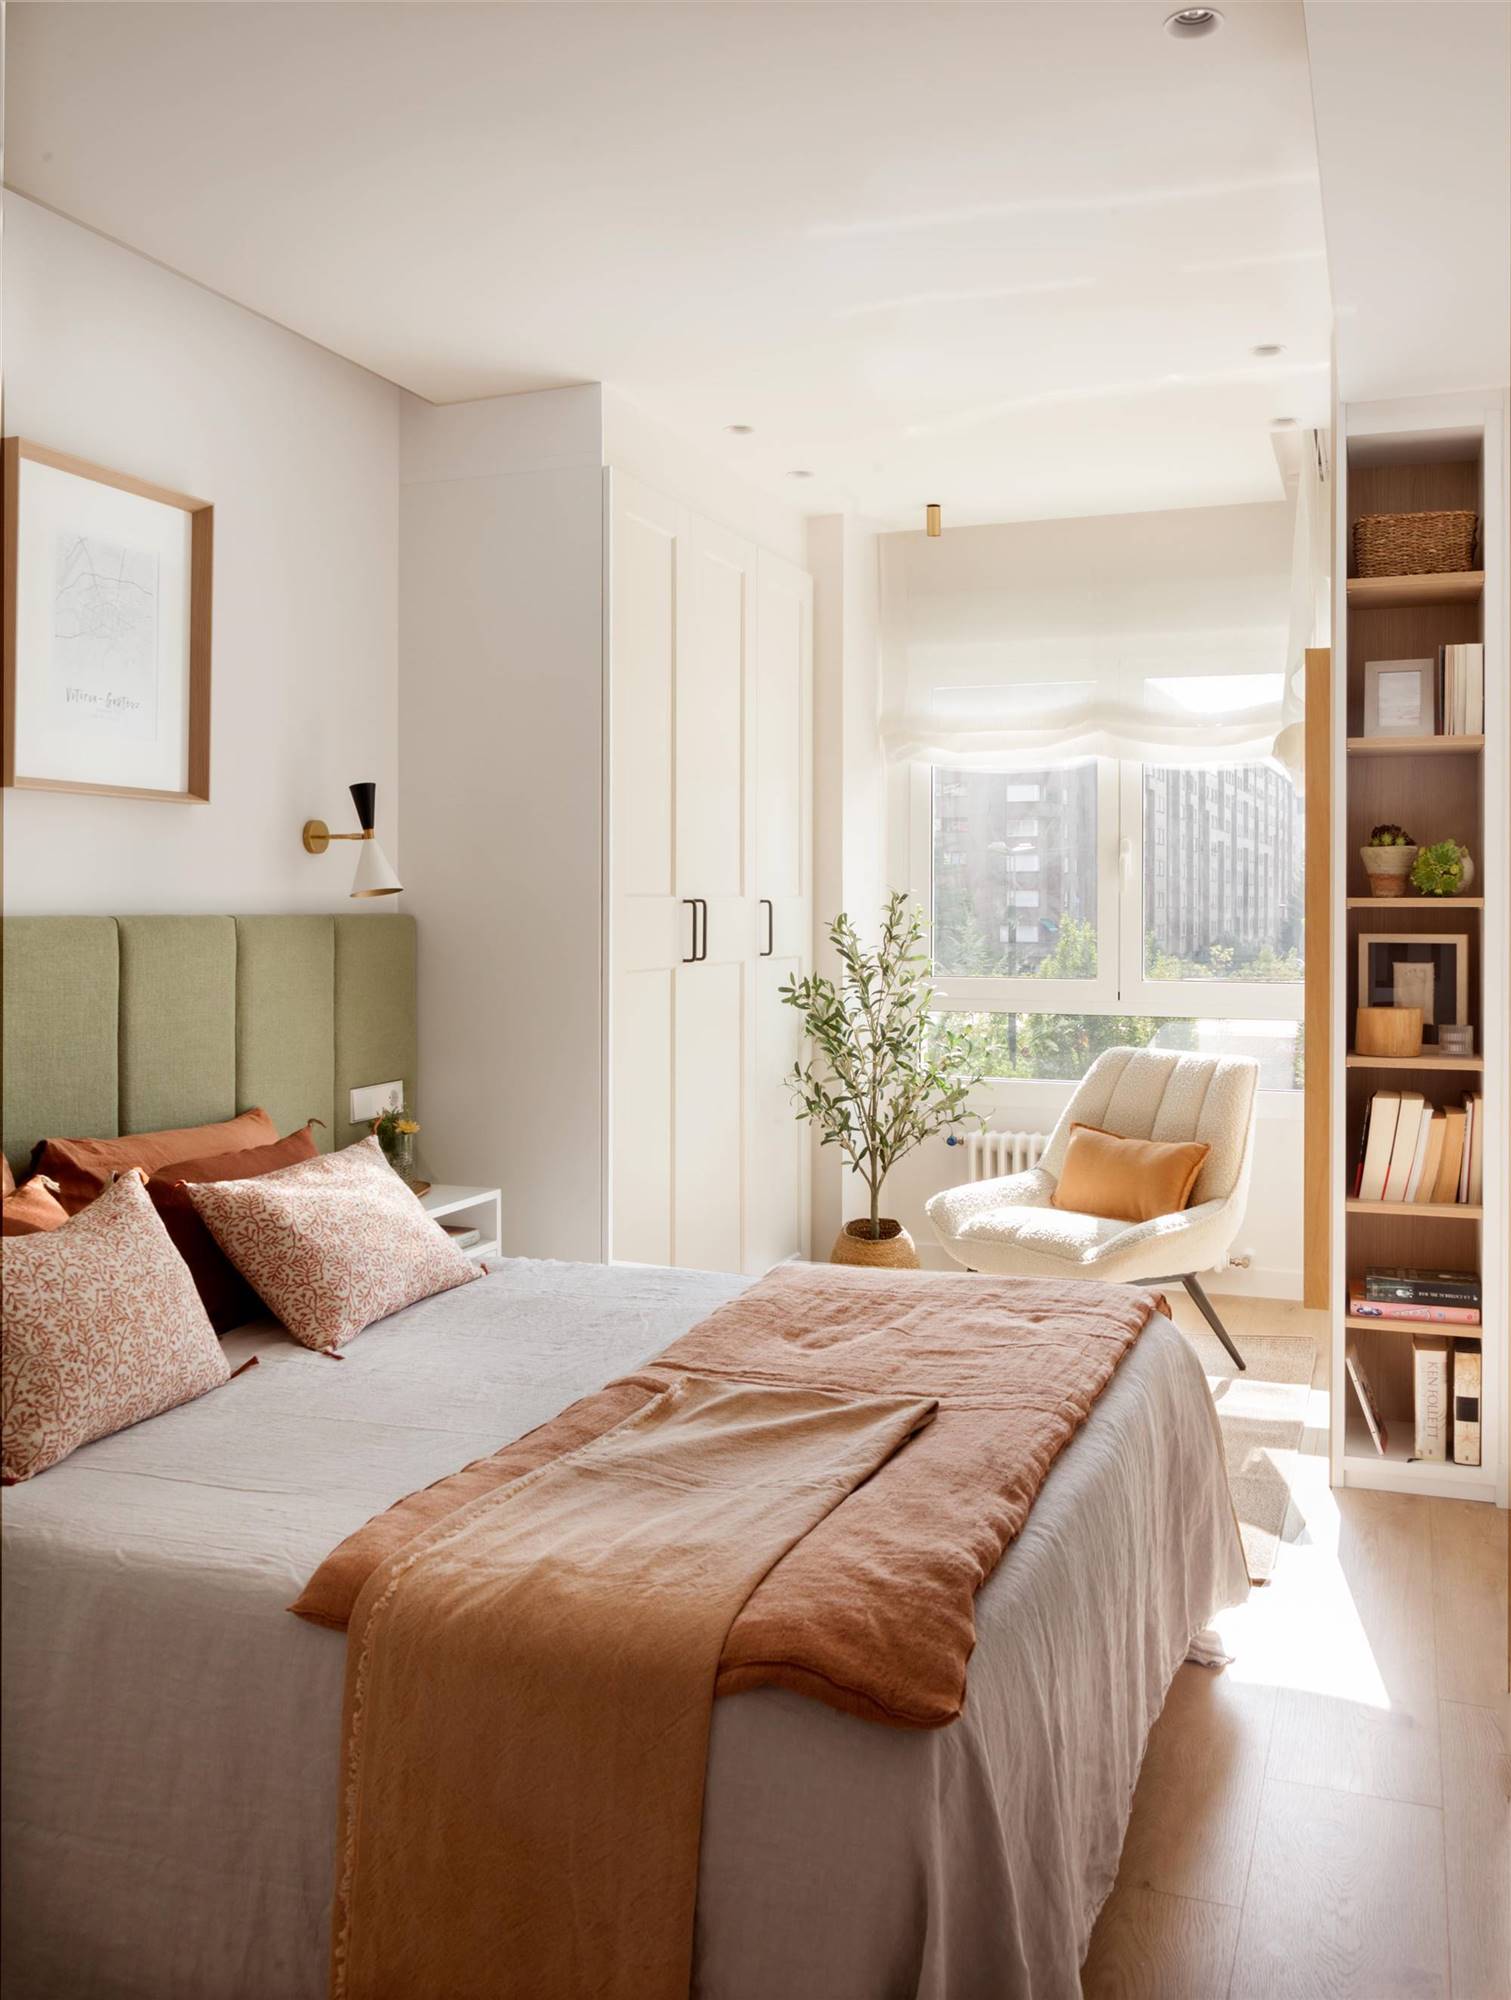 Un dormitorio principal cálido y armonioso en tonos pastel.